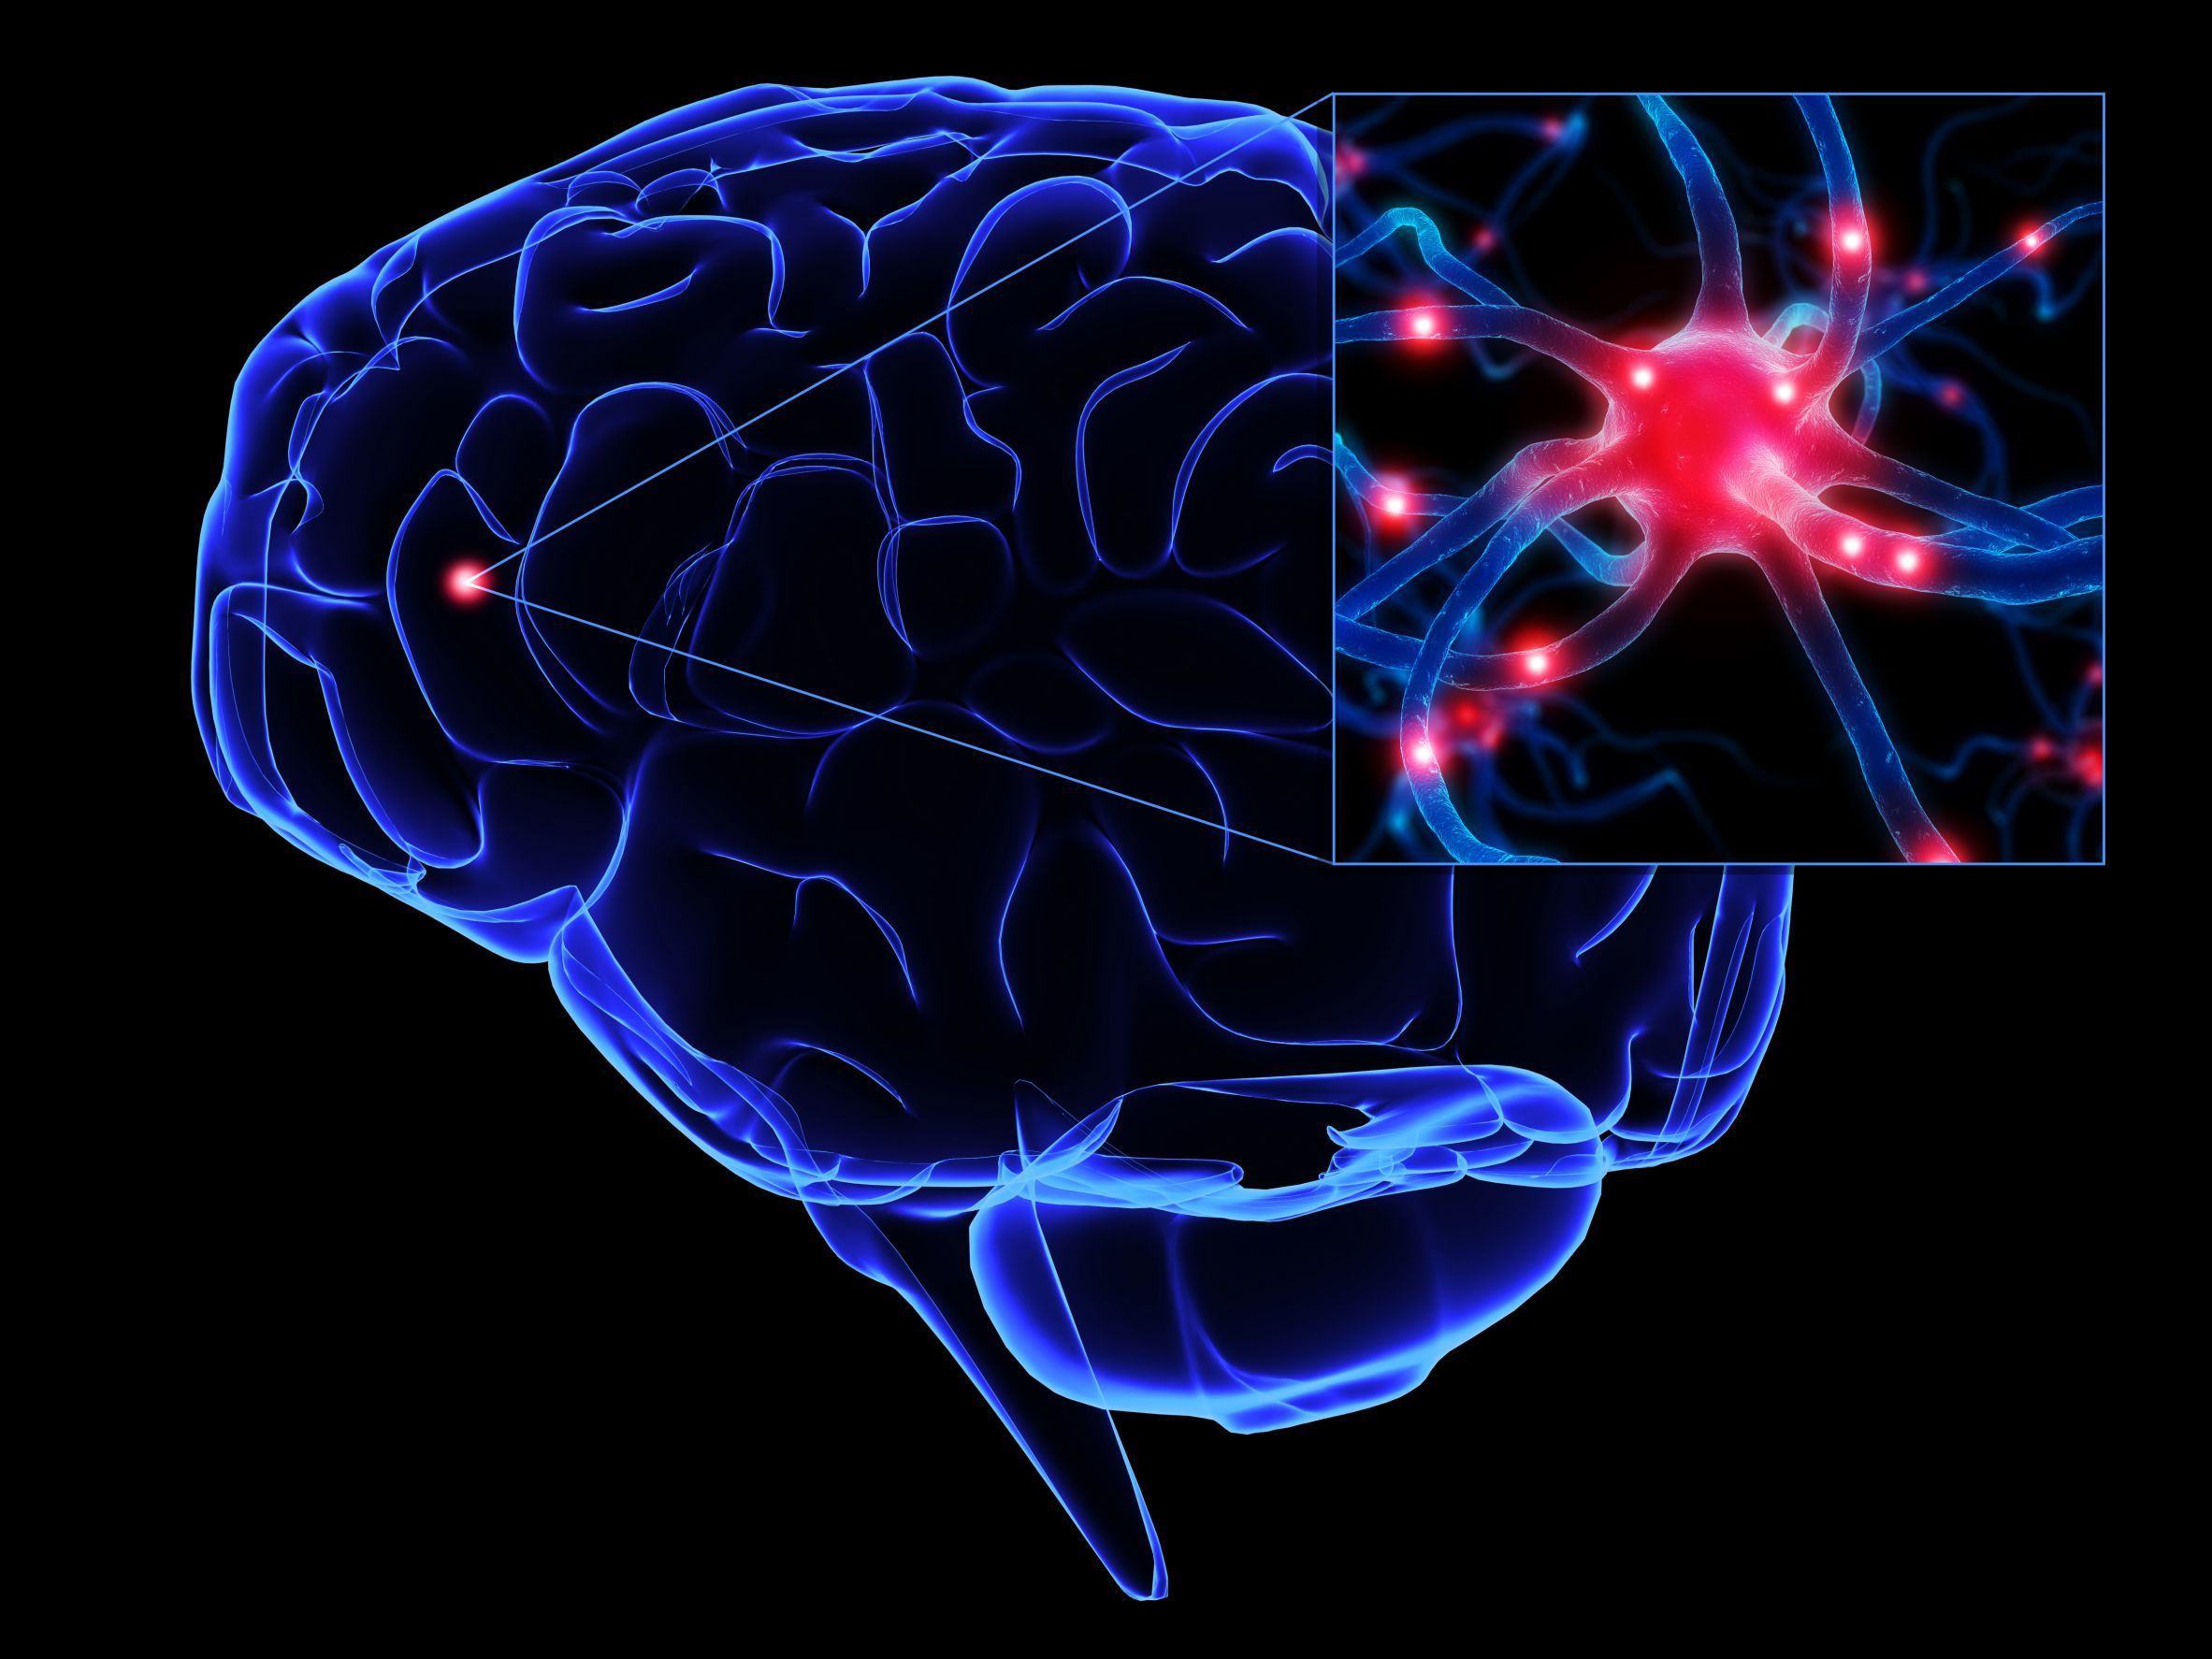 کلیدی ترین نکات و پاسخ به پرسشهای رایج در مورد «سکته مغزی»/ در مورد سکته مغزی چه میزان اطلاعات دارید؟